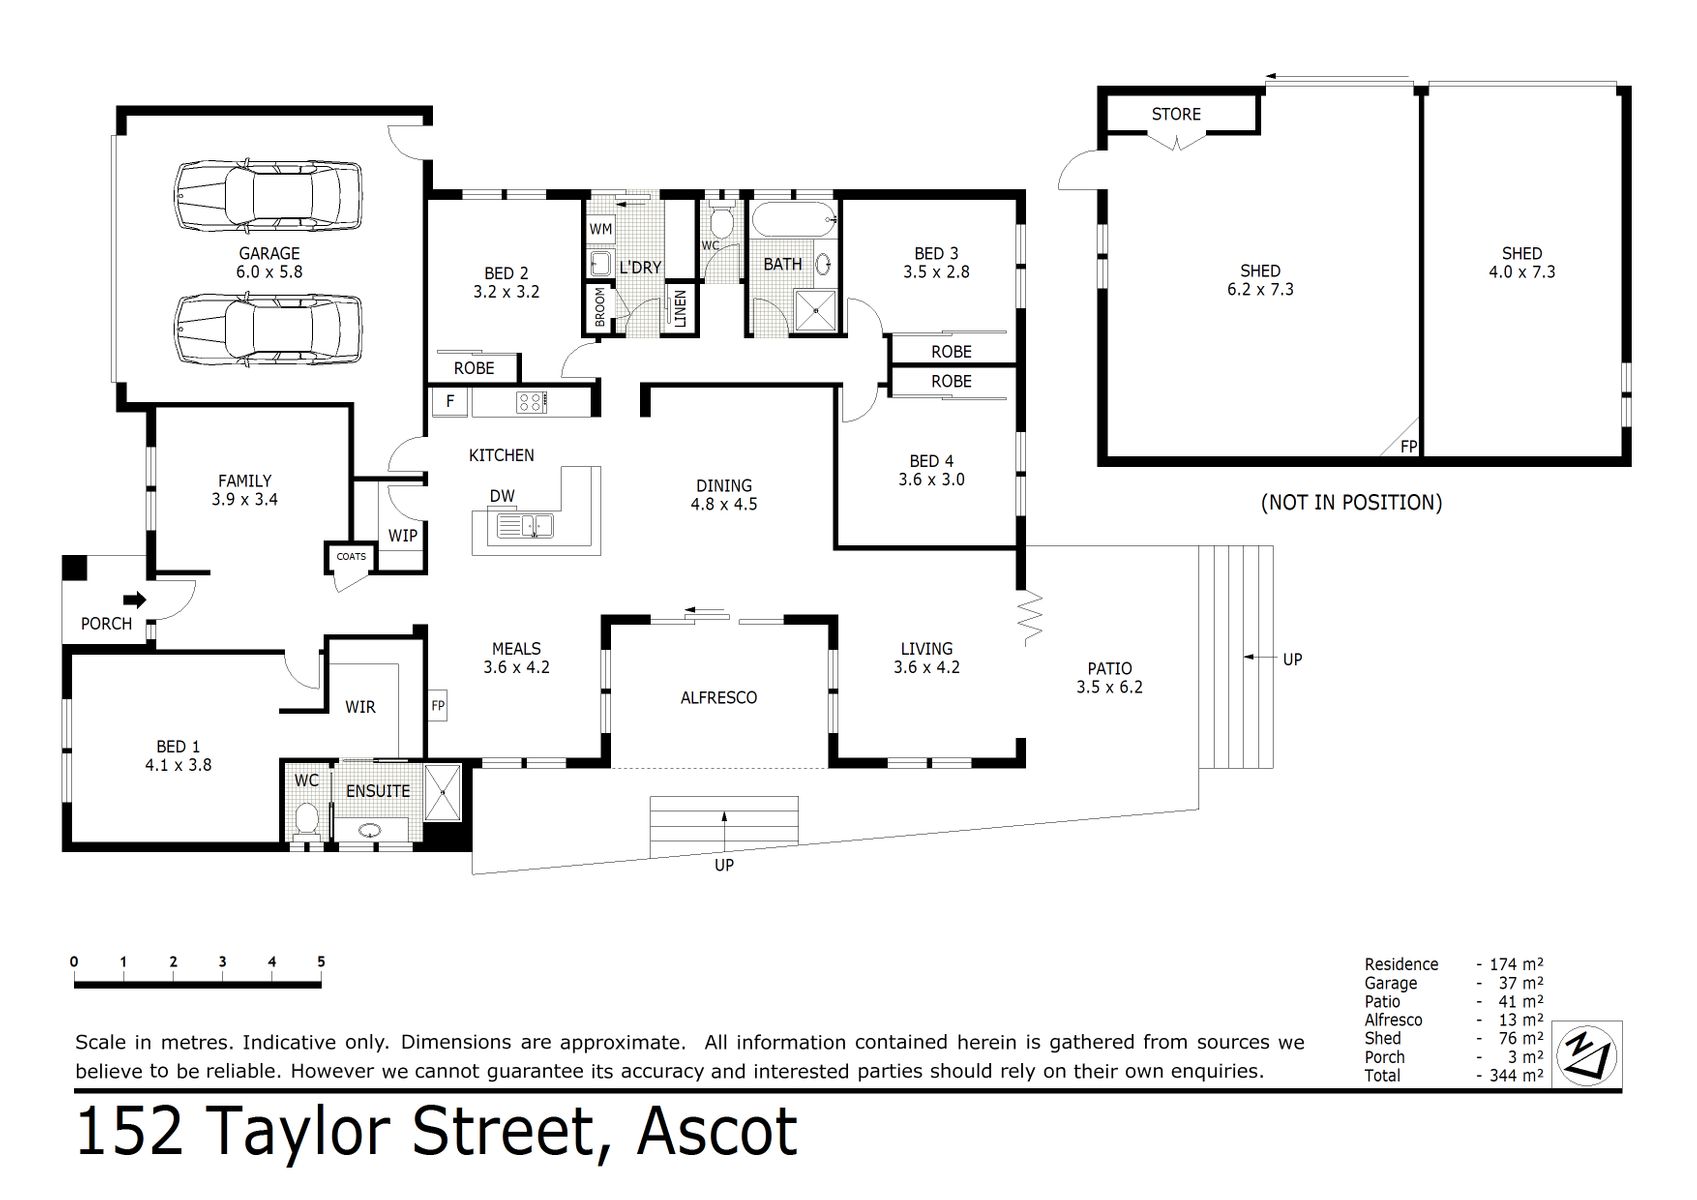 152 Taylor Street Ascot (09 MAR 2021) 174sqm